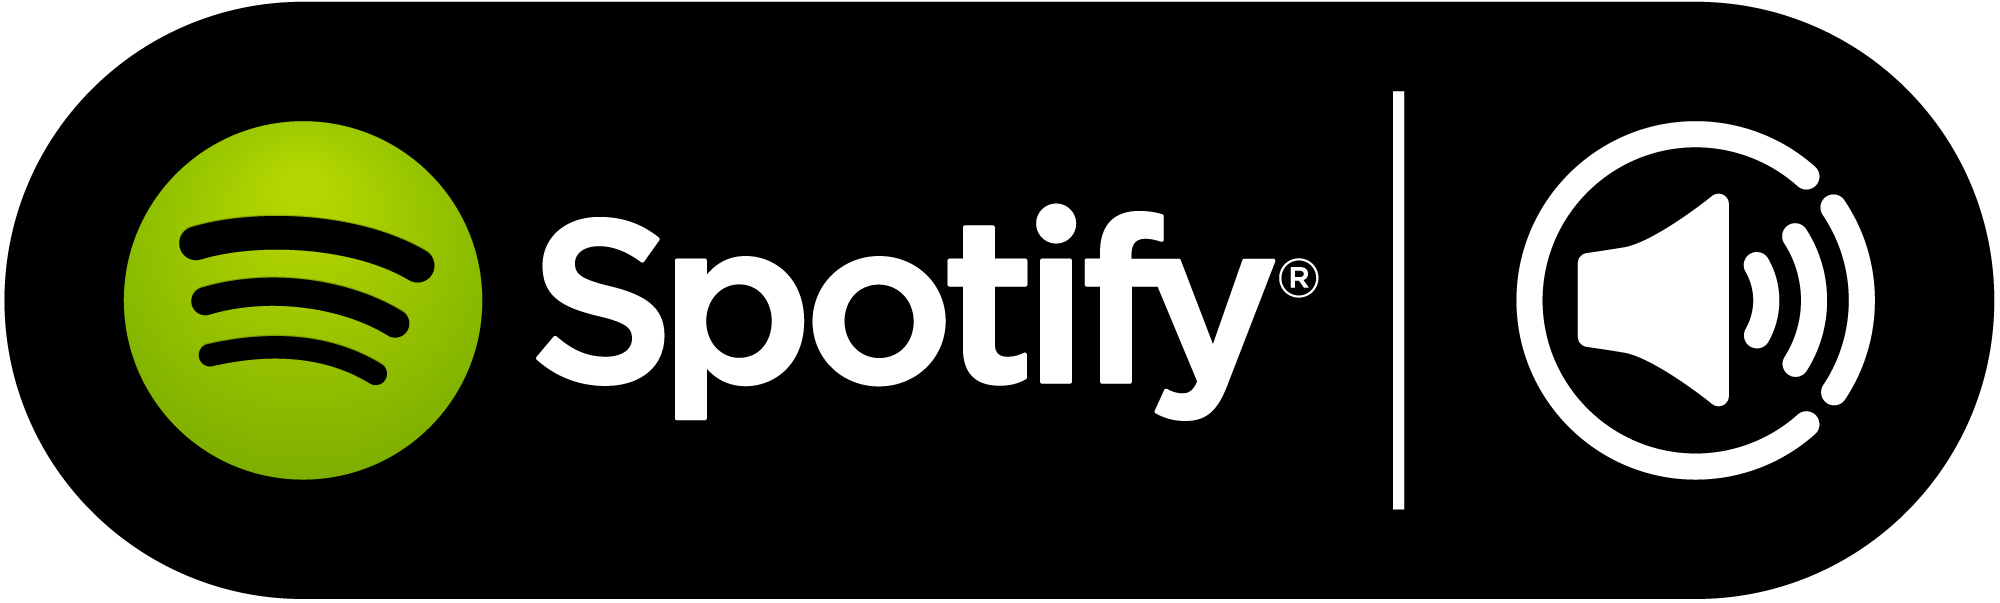 spotify-logo-png--2000.png